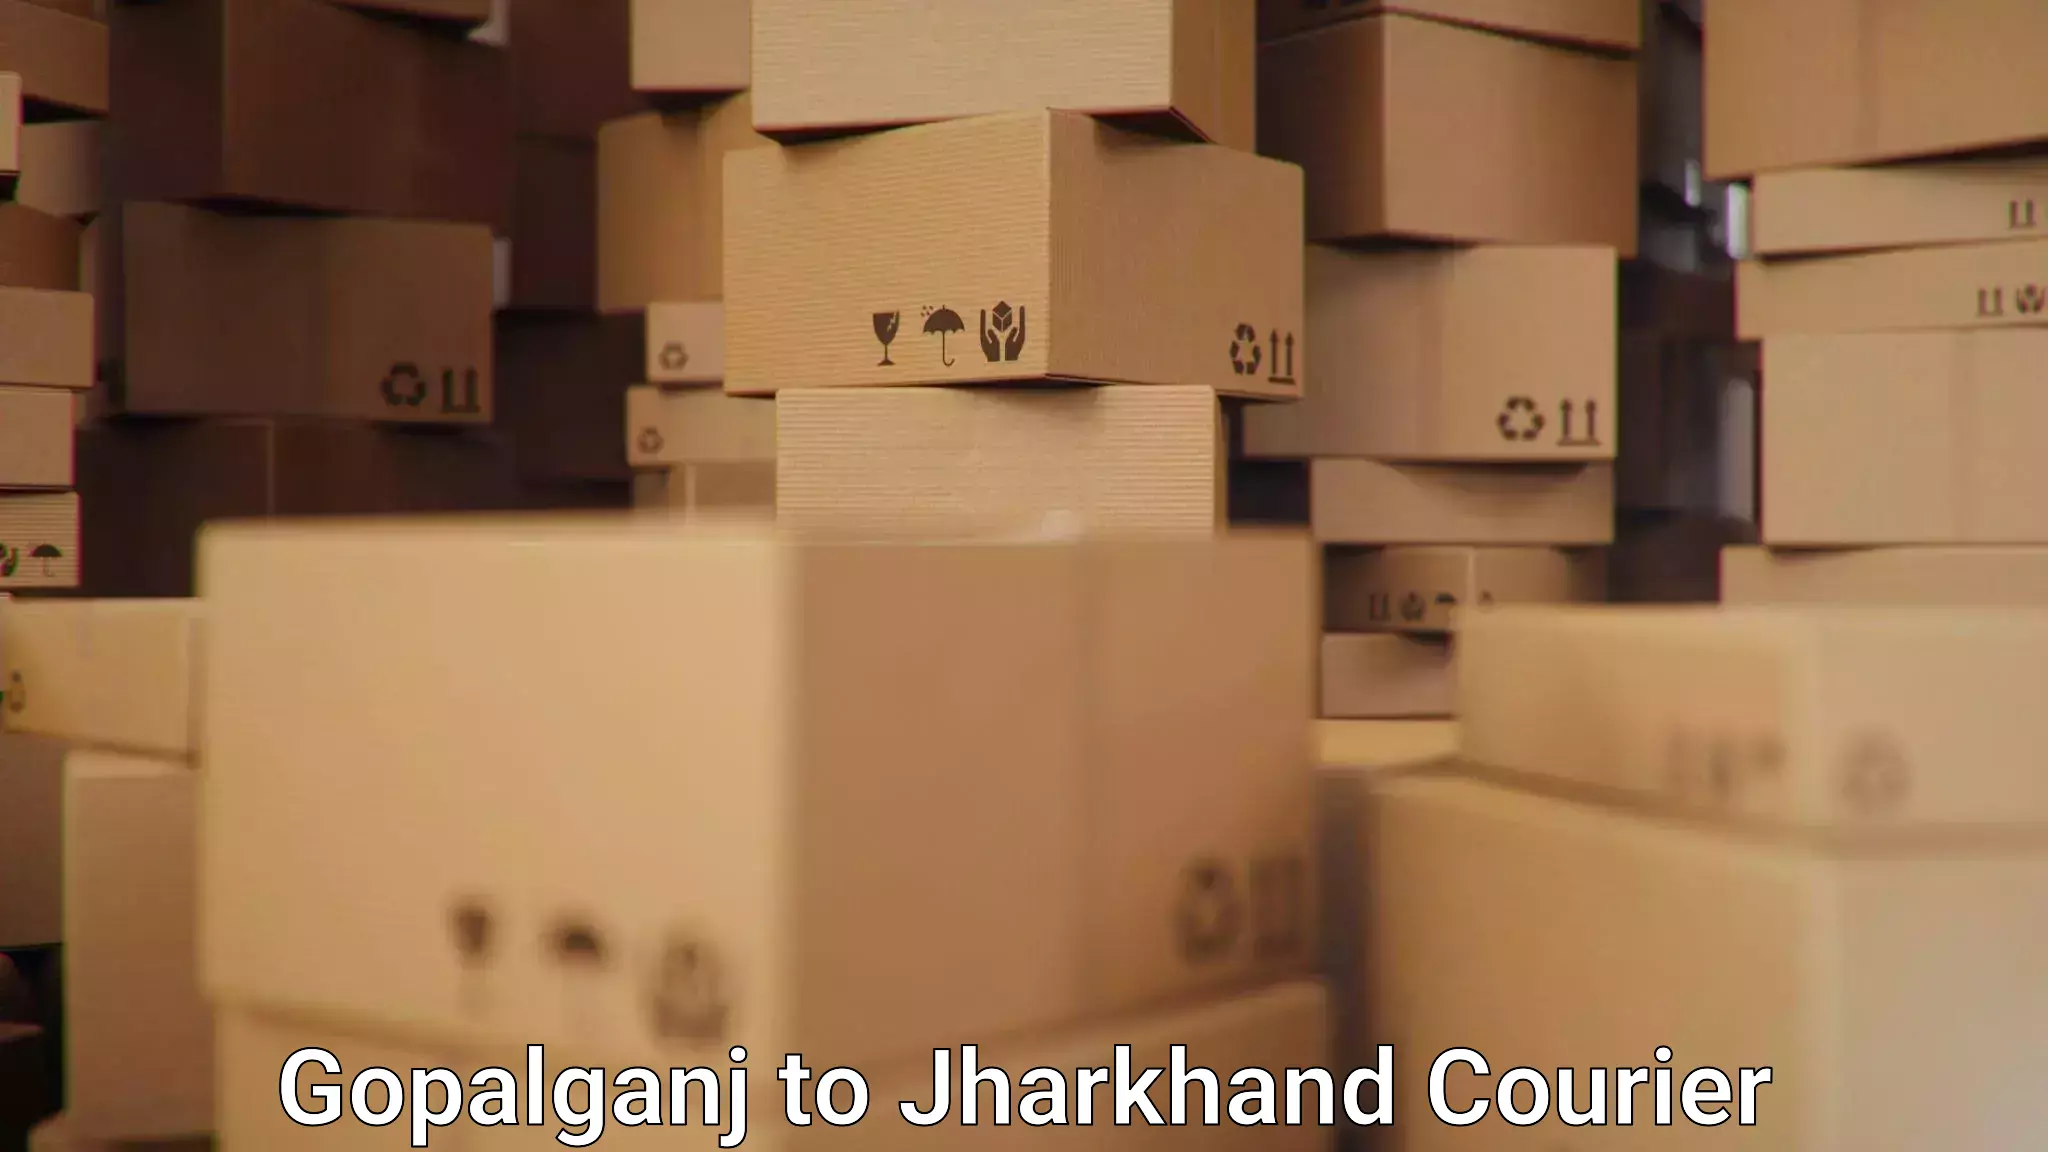 24-hour delivery options Gopalganj to NIT Jamshedpur